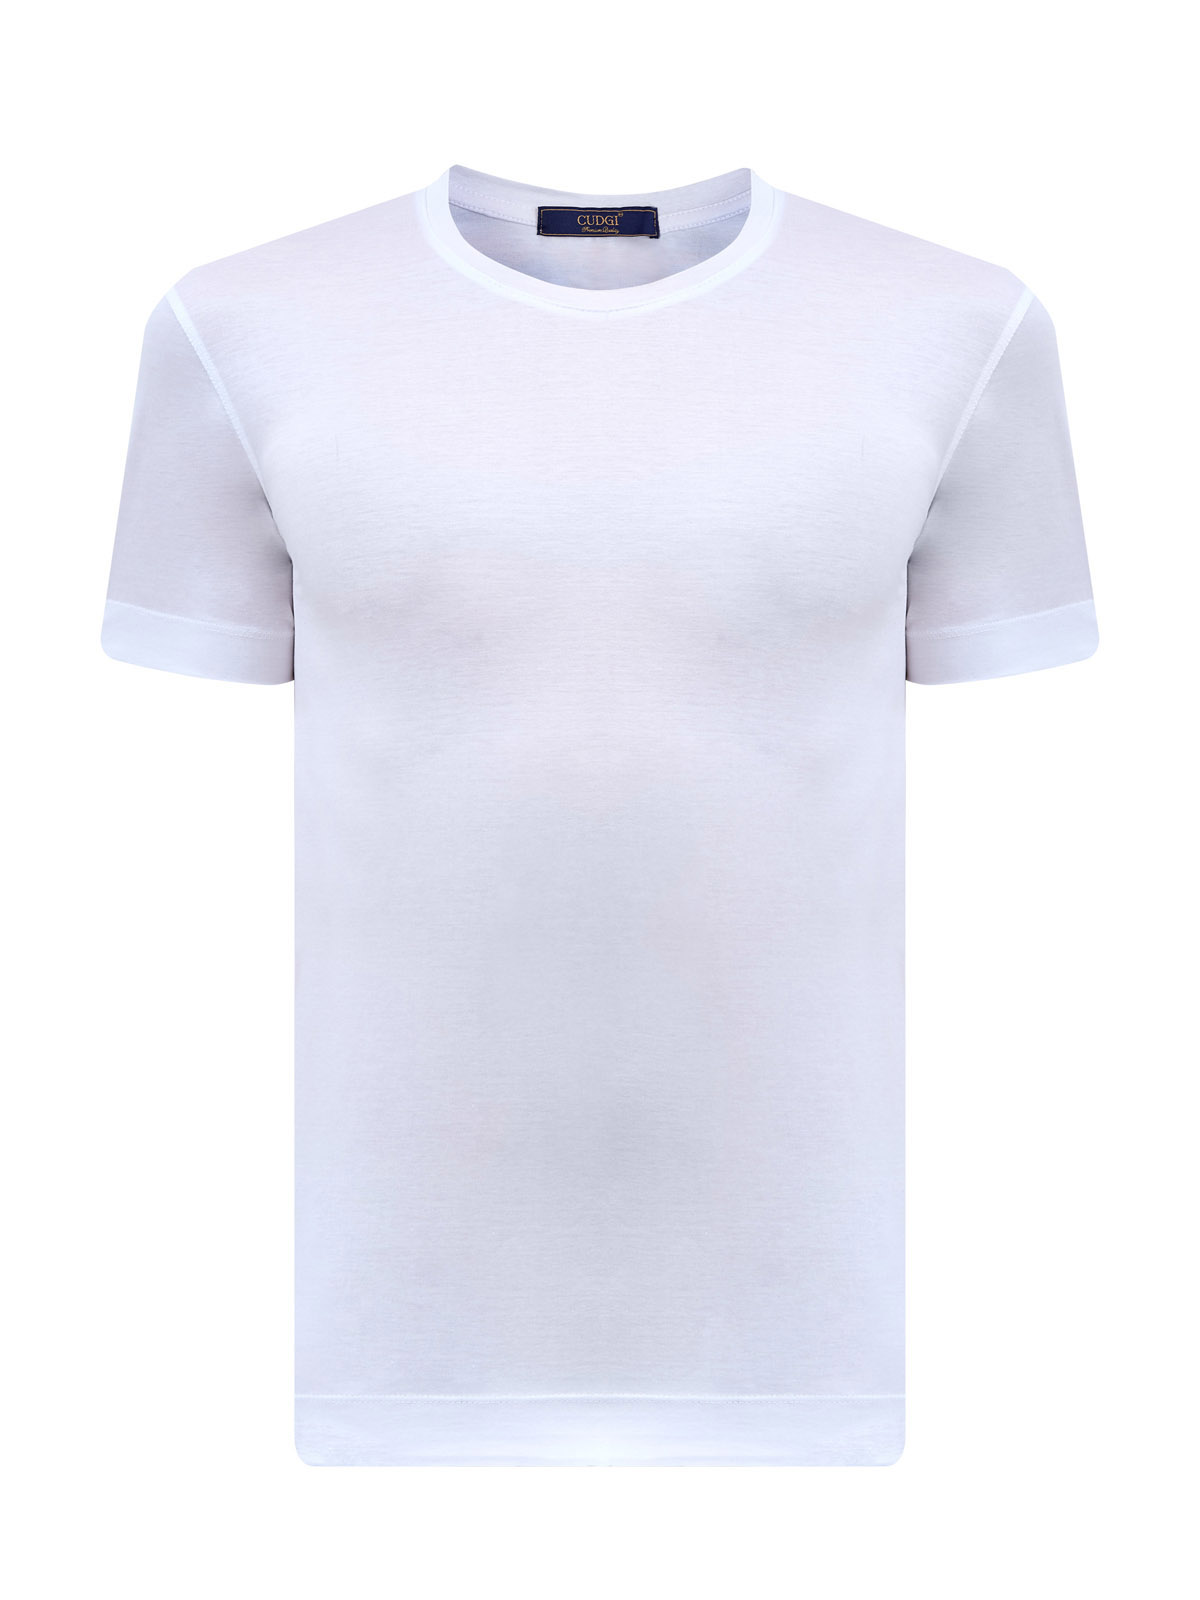 Базовая футболка из хлопка, шелка и тенселя с нашивкой CUDGI, цвет белый, размер 56 - фото 1